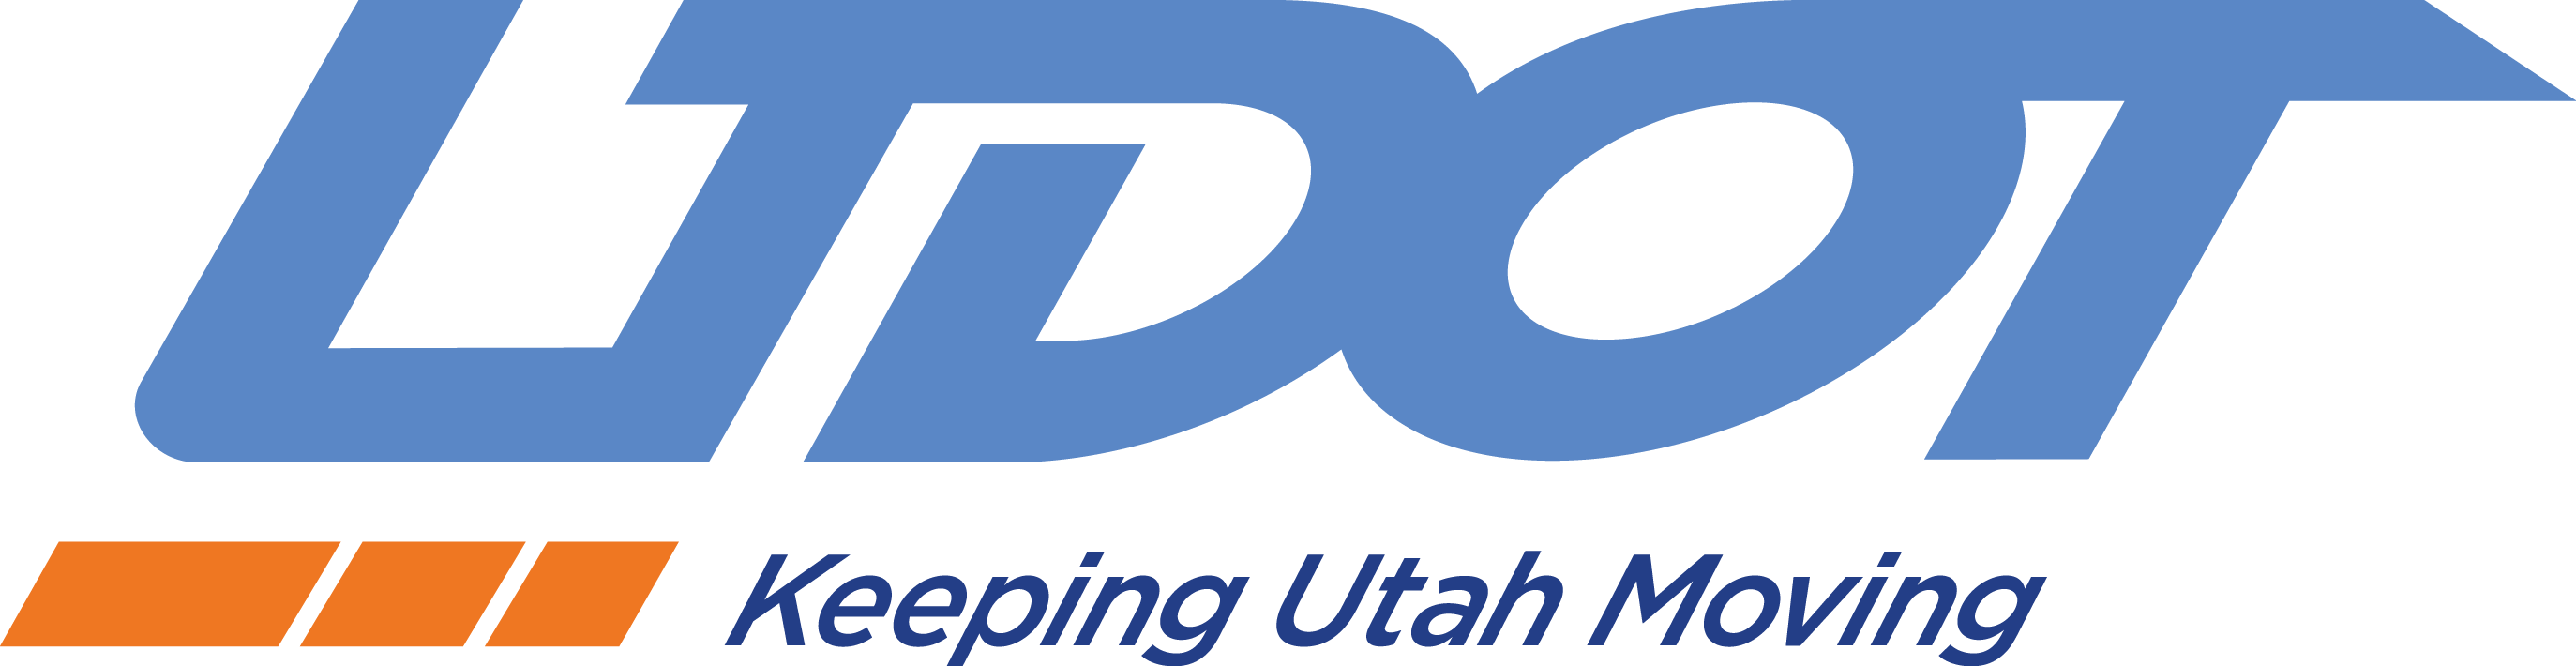 UTDOT logo